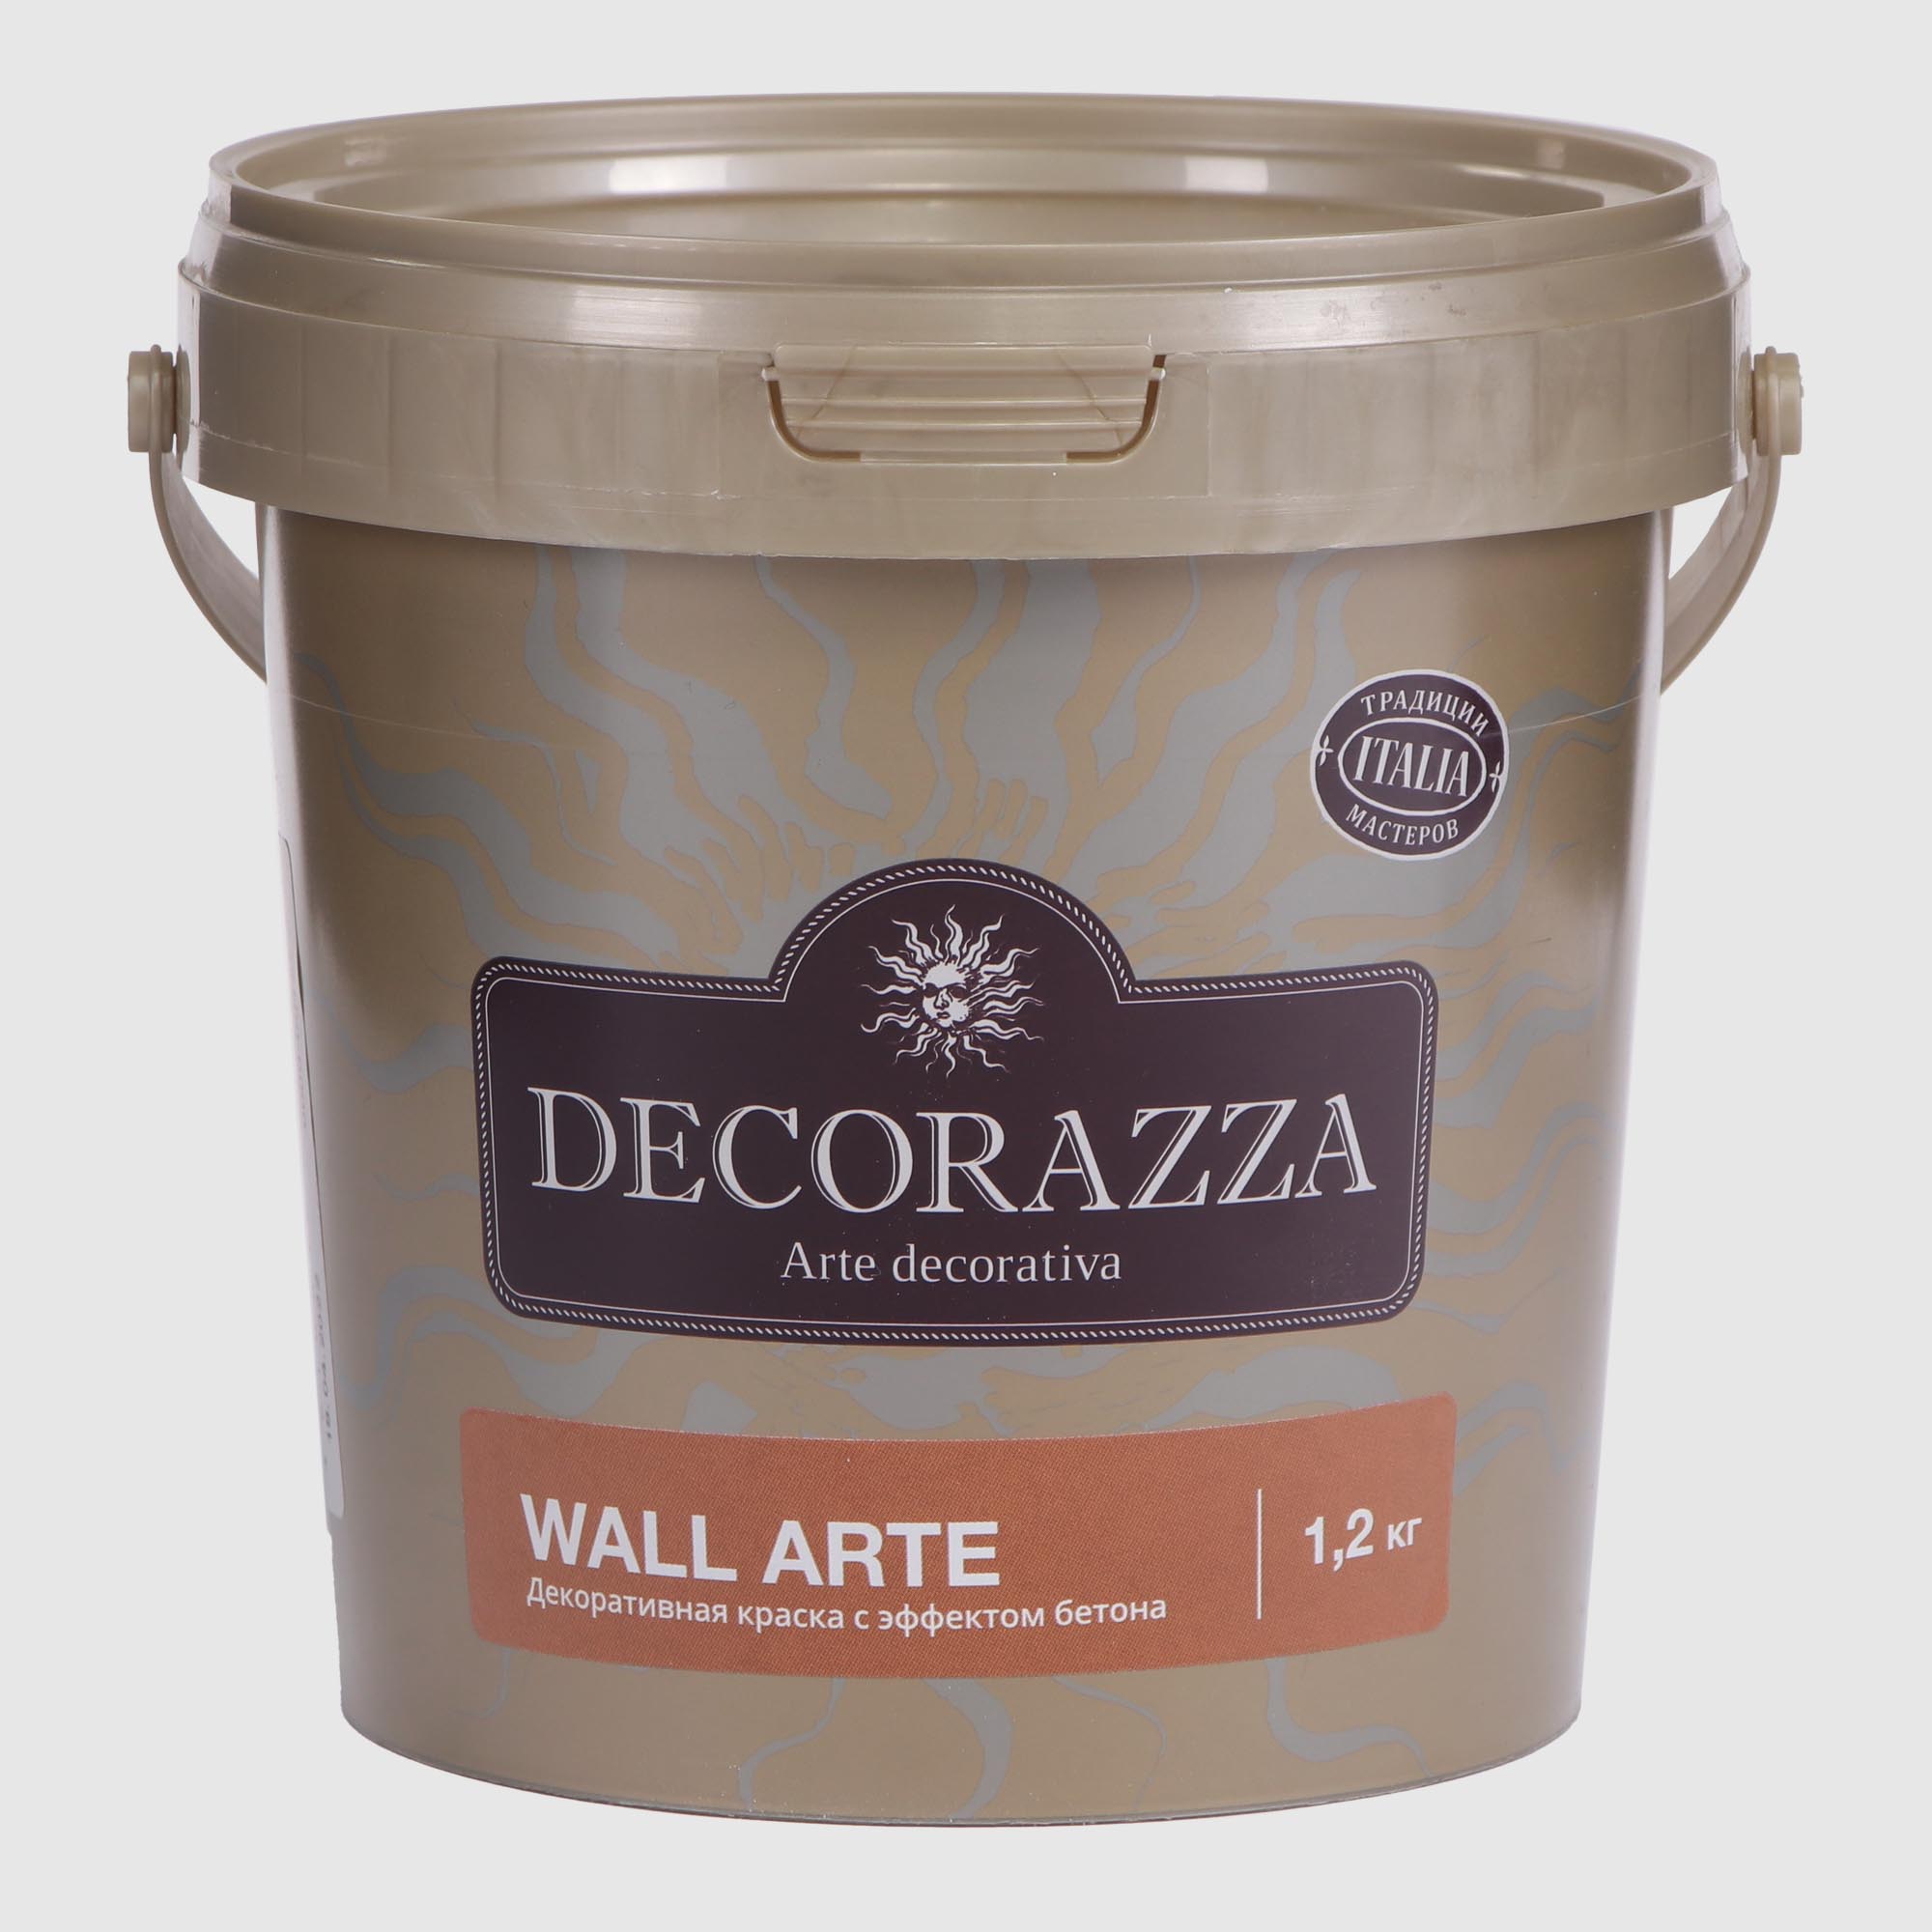 цена Покрытие Decorazza декоративное 1.2 кг